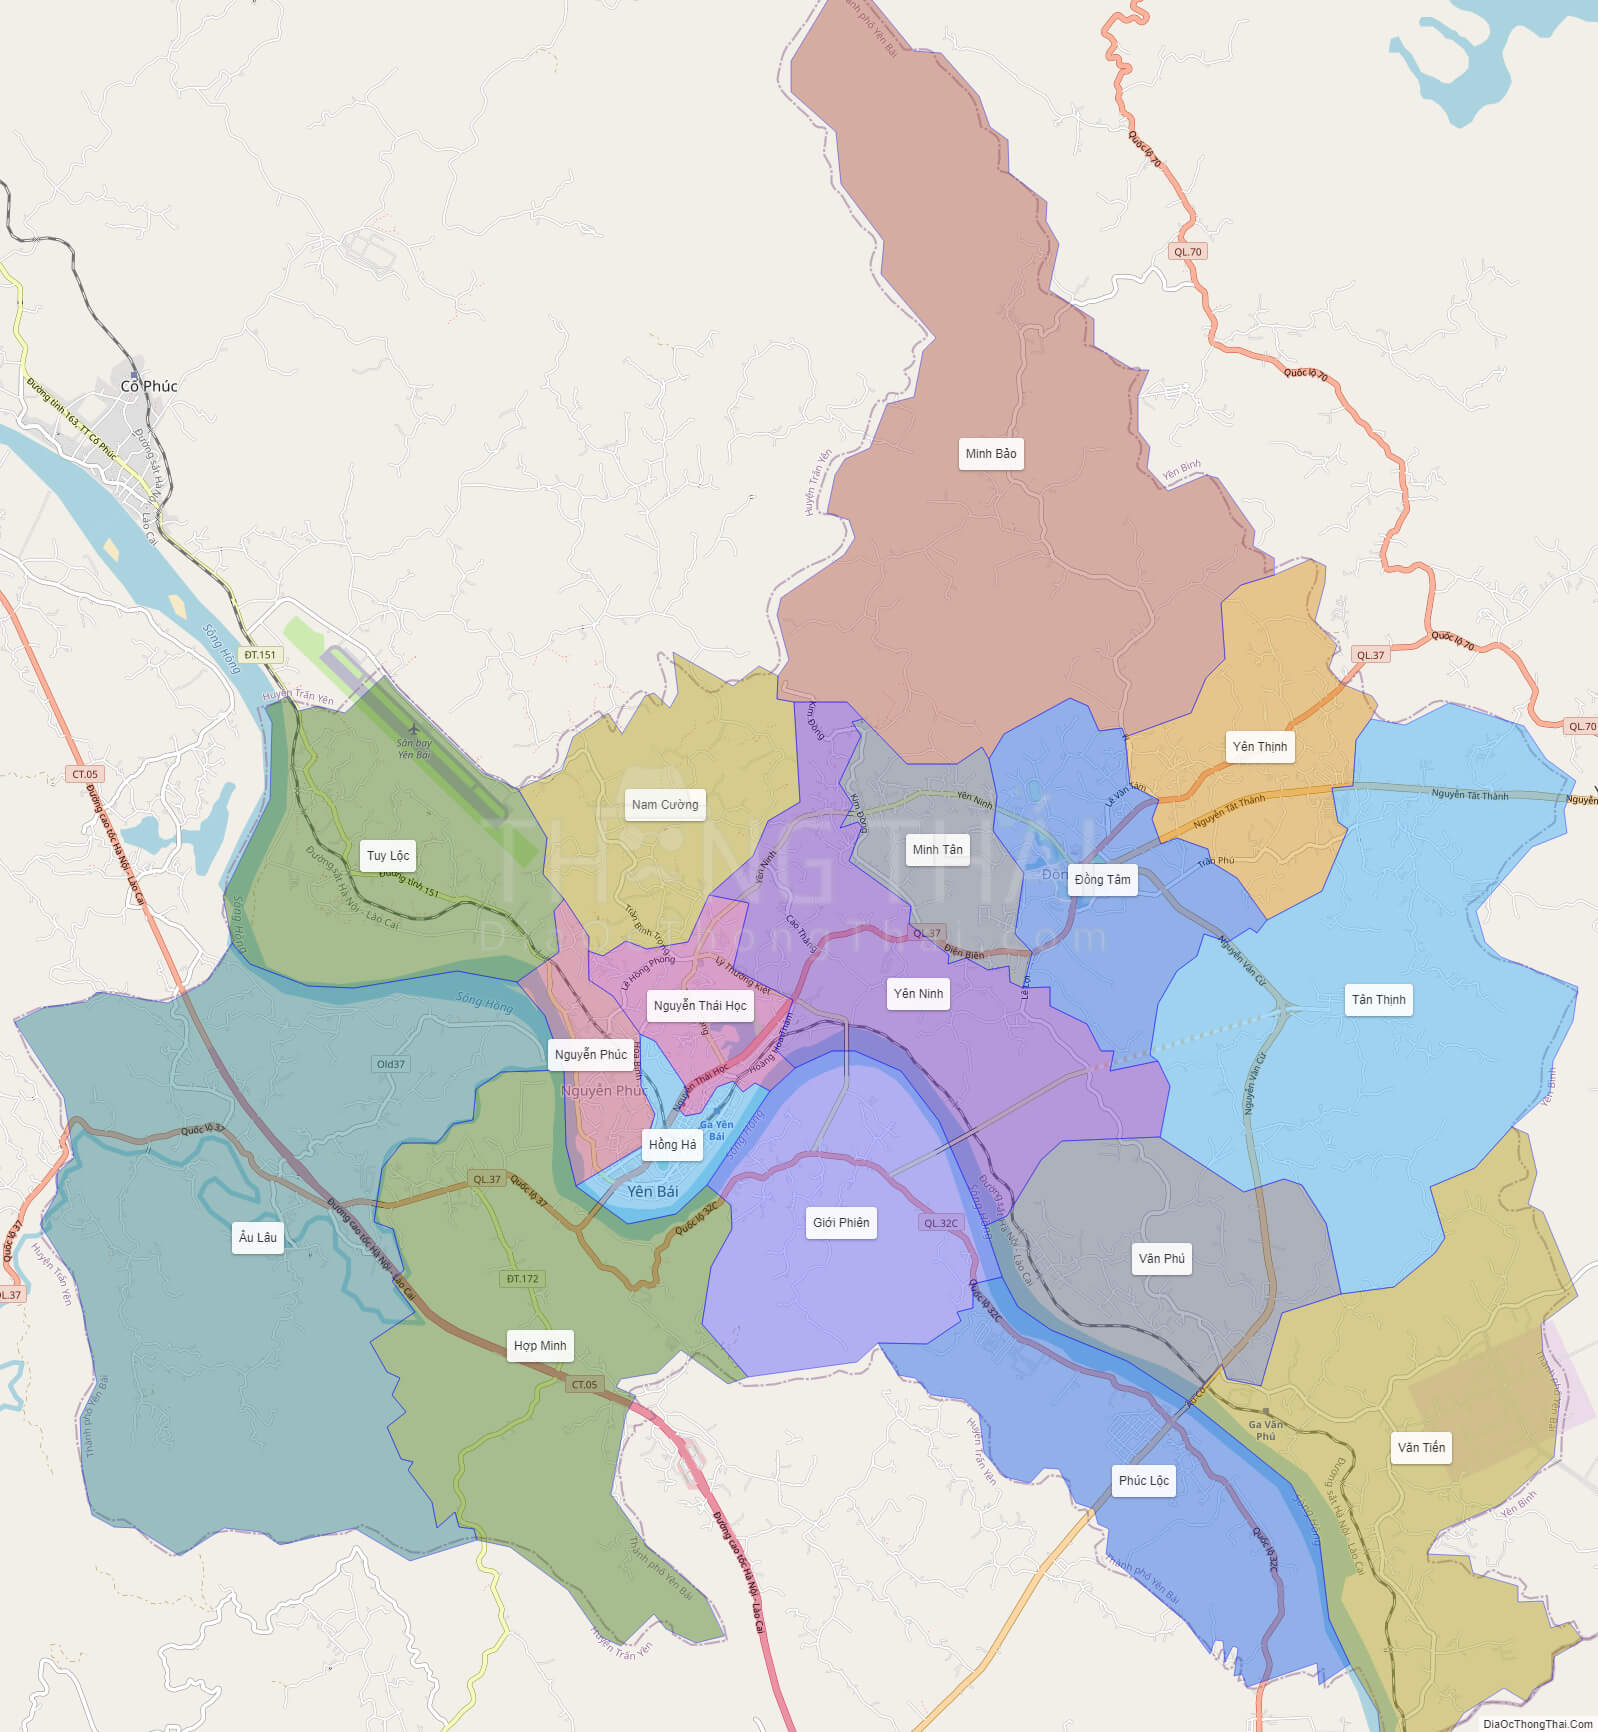 Bảng chi tiết bản đồ hành chính thành phố yên bái theo từng quận huyện